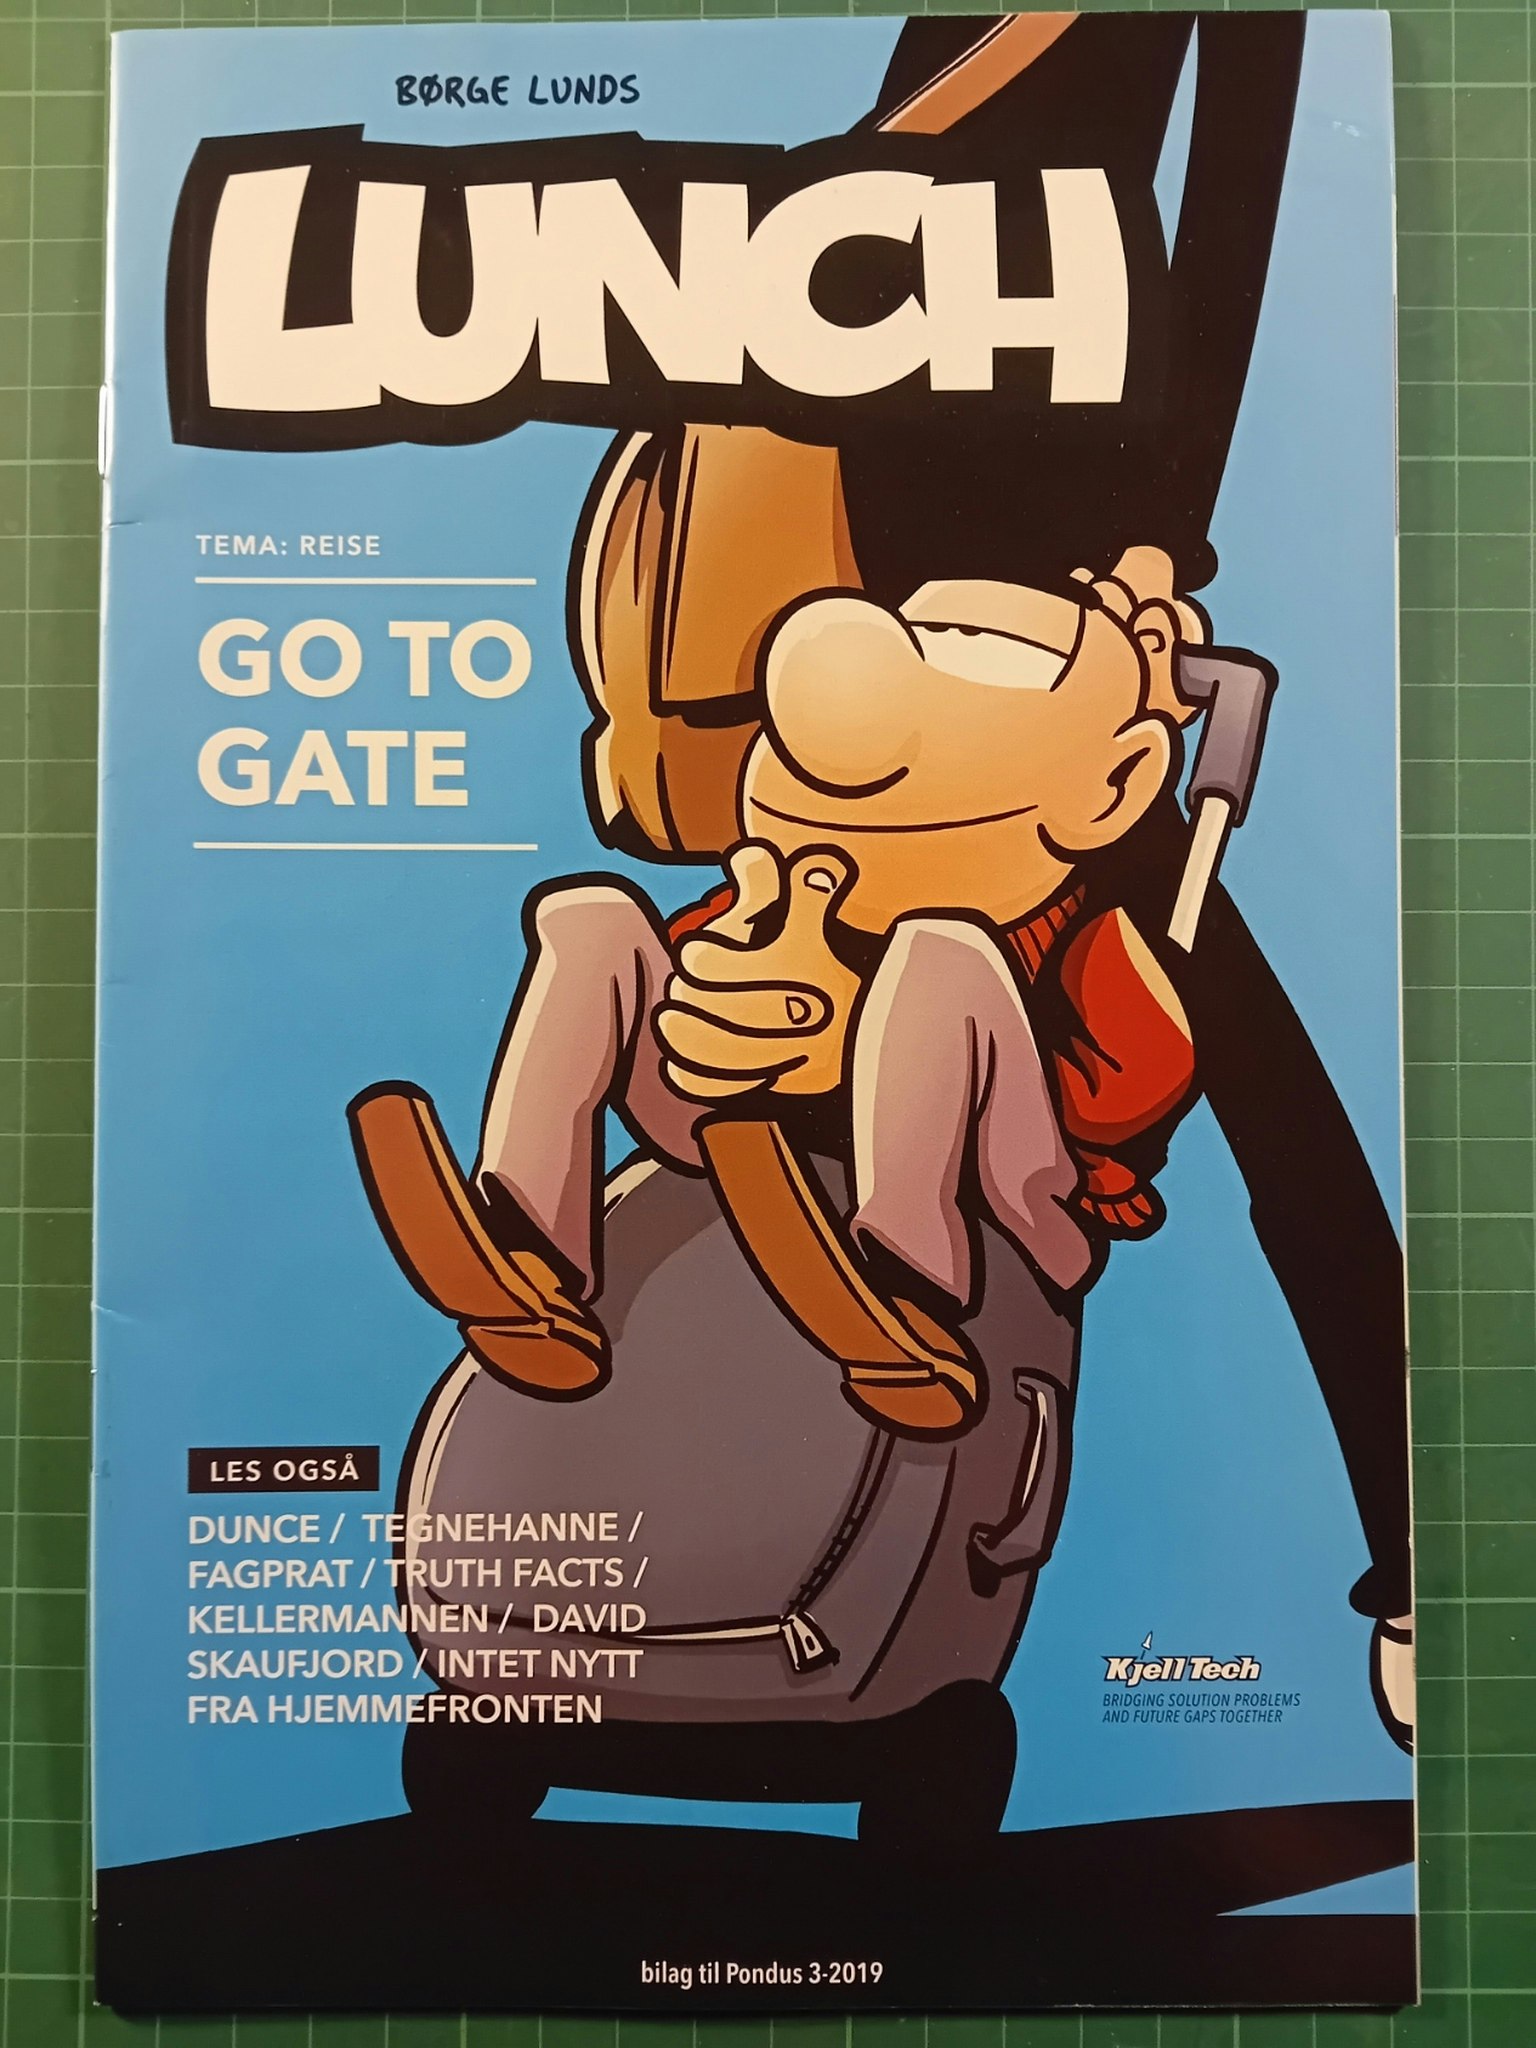 Lunch bilag : Go to gate